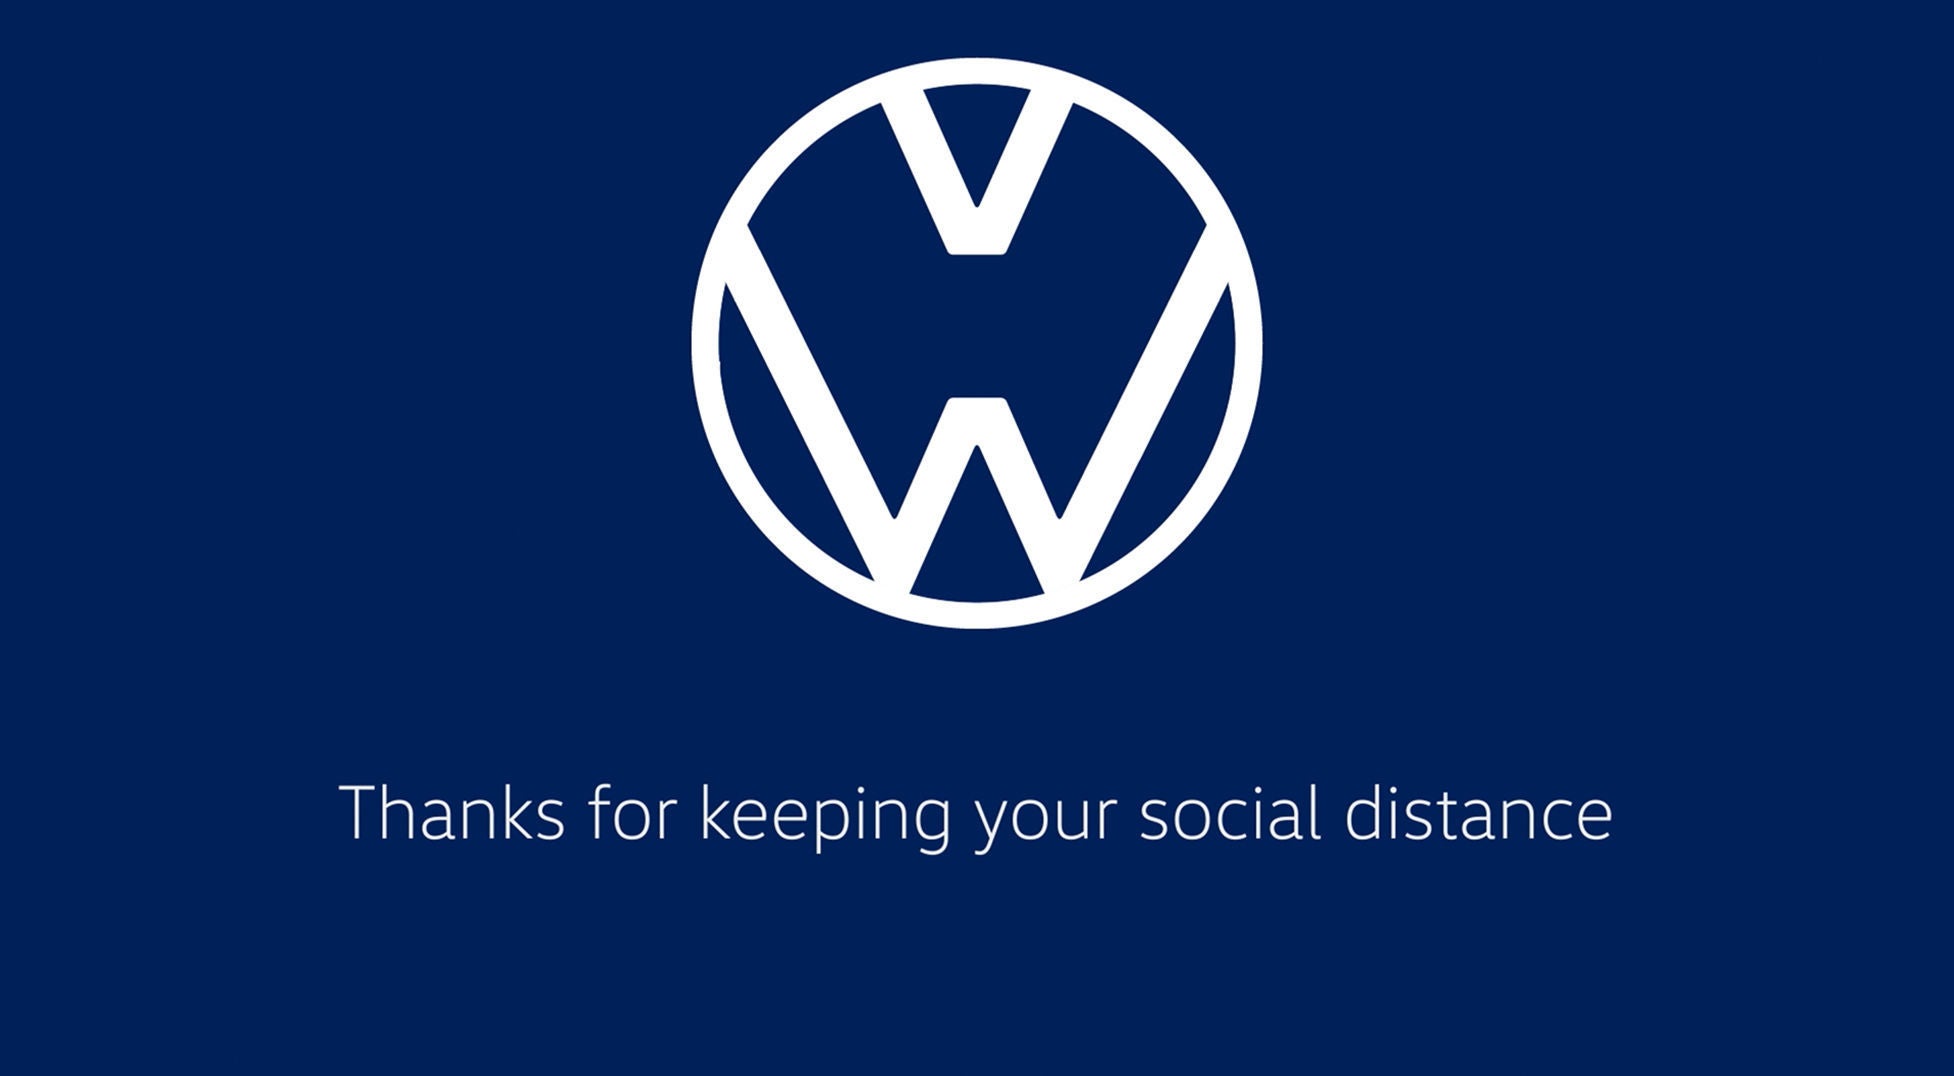 Vw Volkswagen Logo 